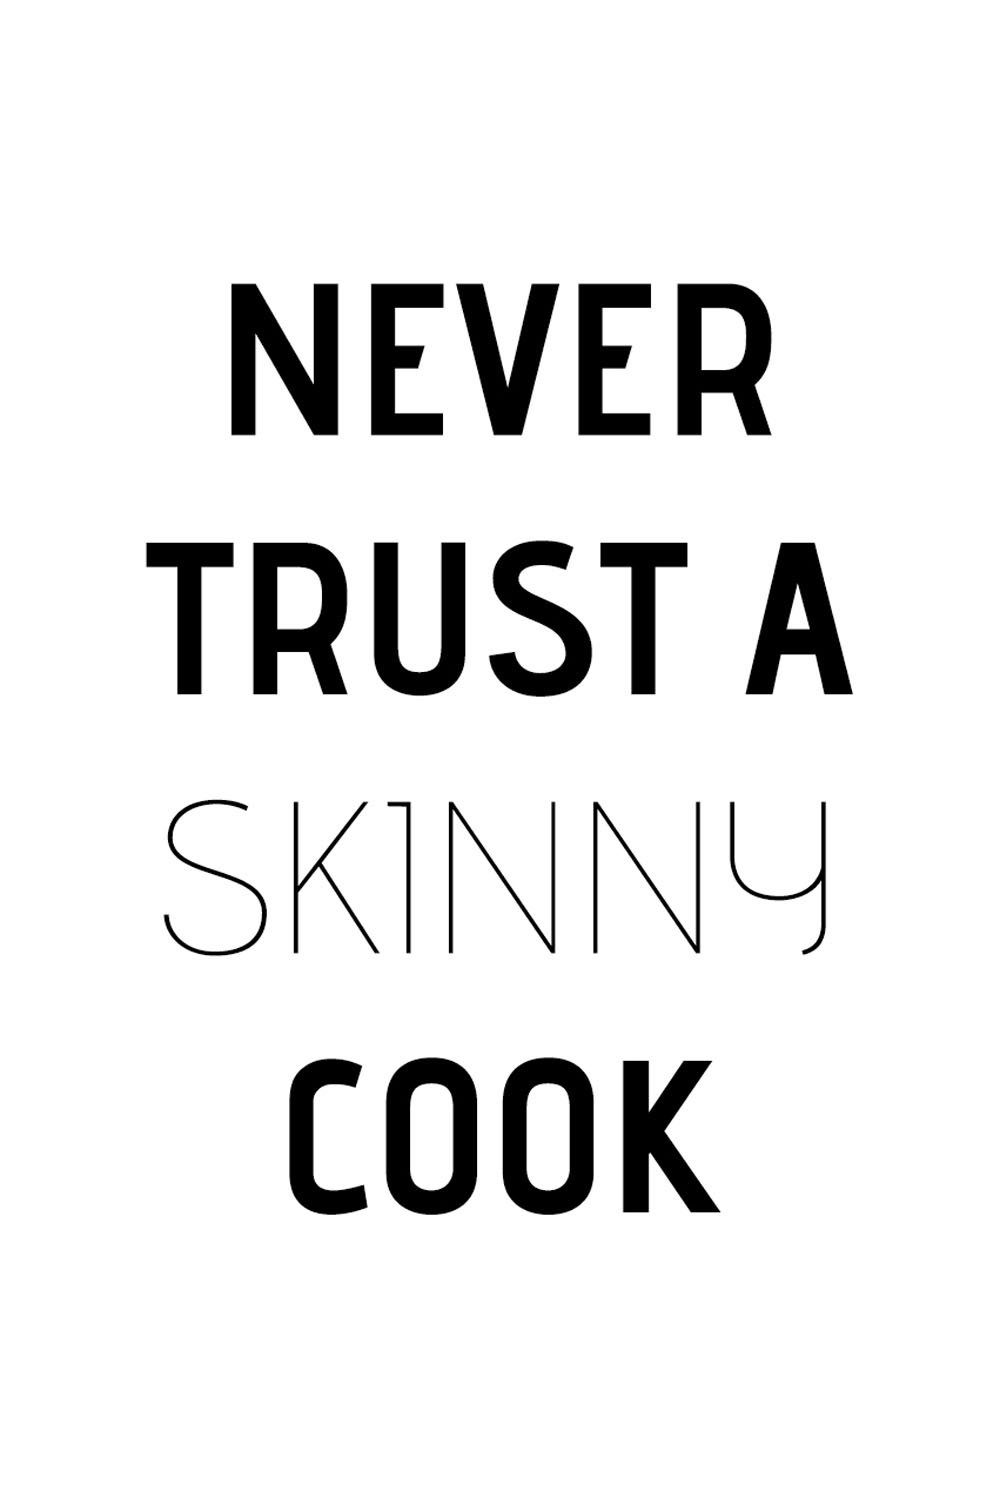 queence Wanddekoobjekt Never trust a skinny cook, auf Stahlblech Schriftzug